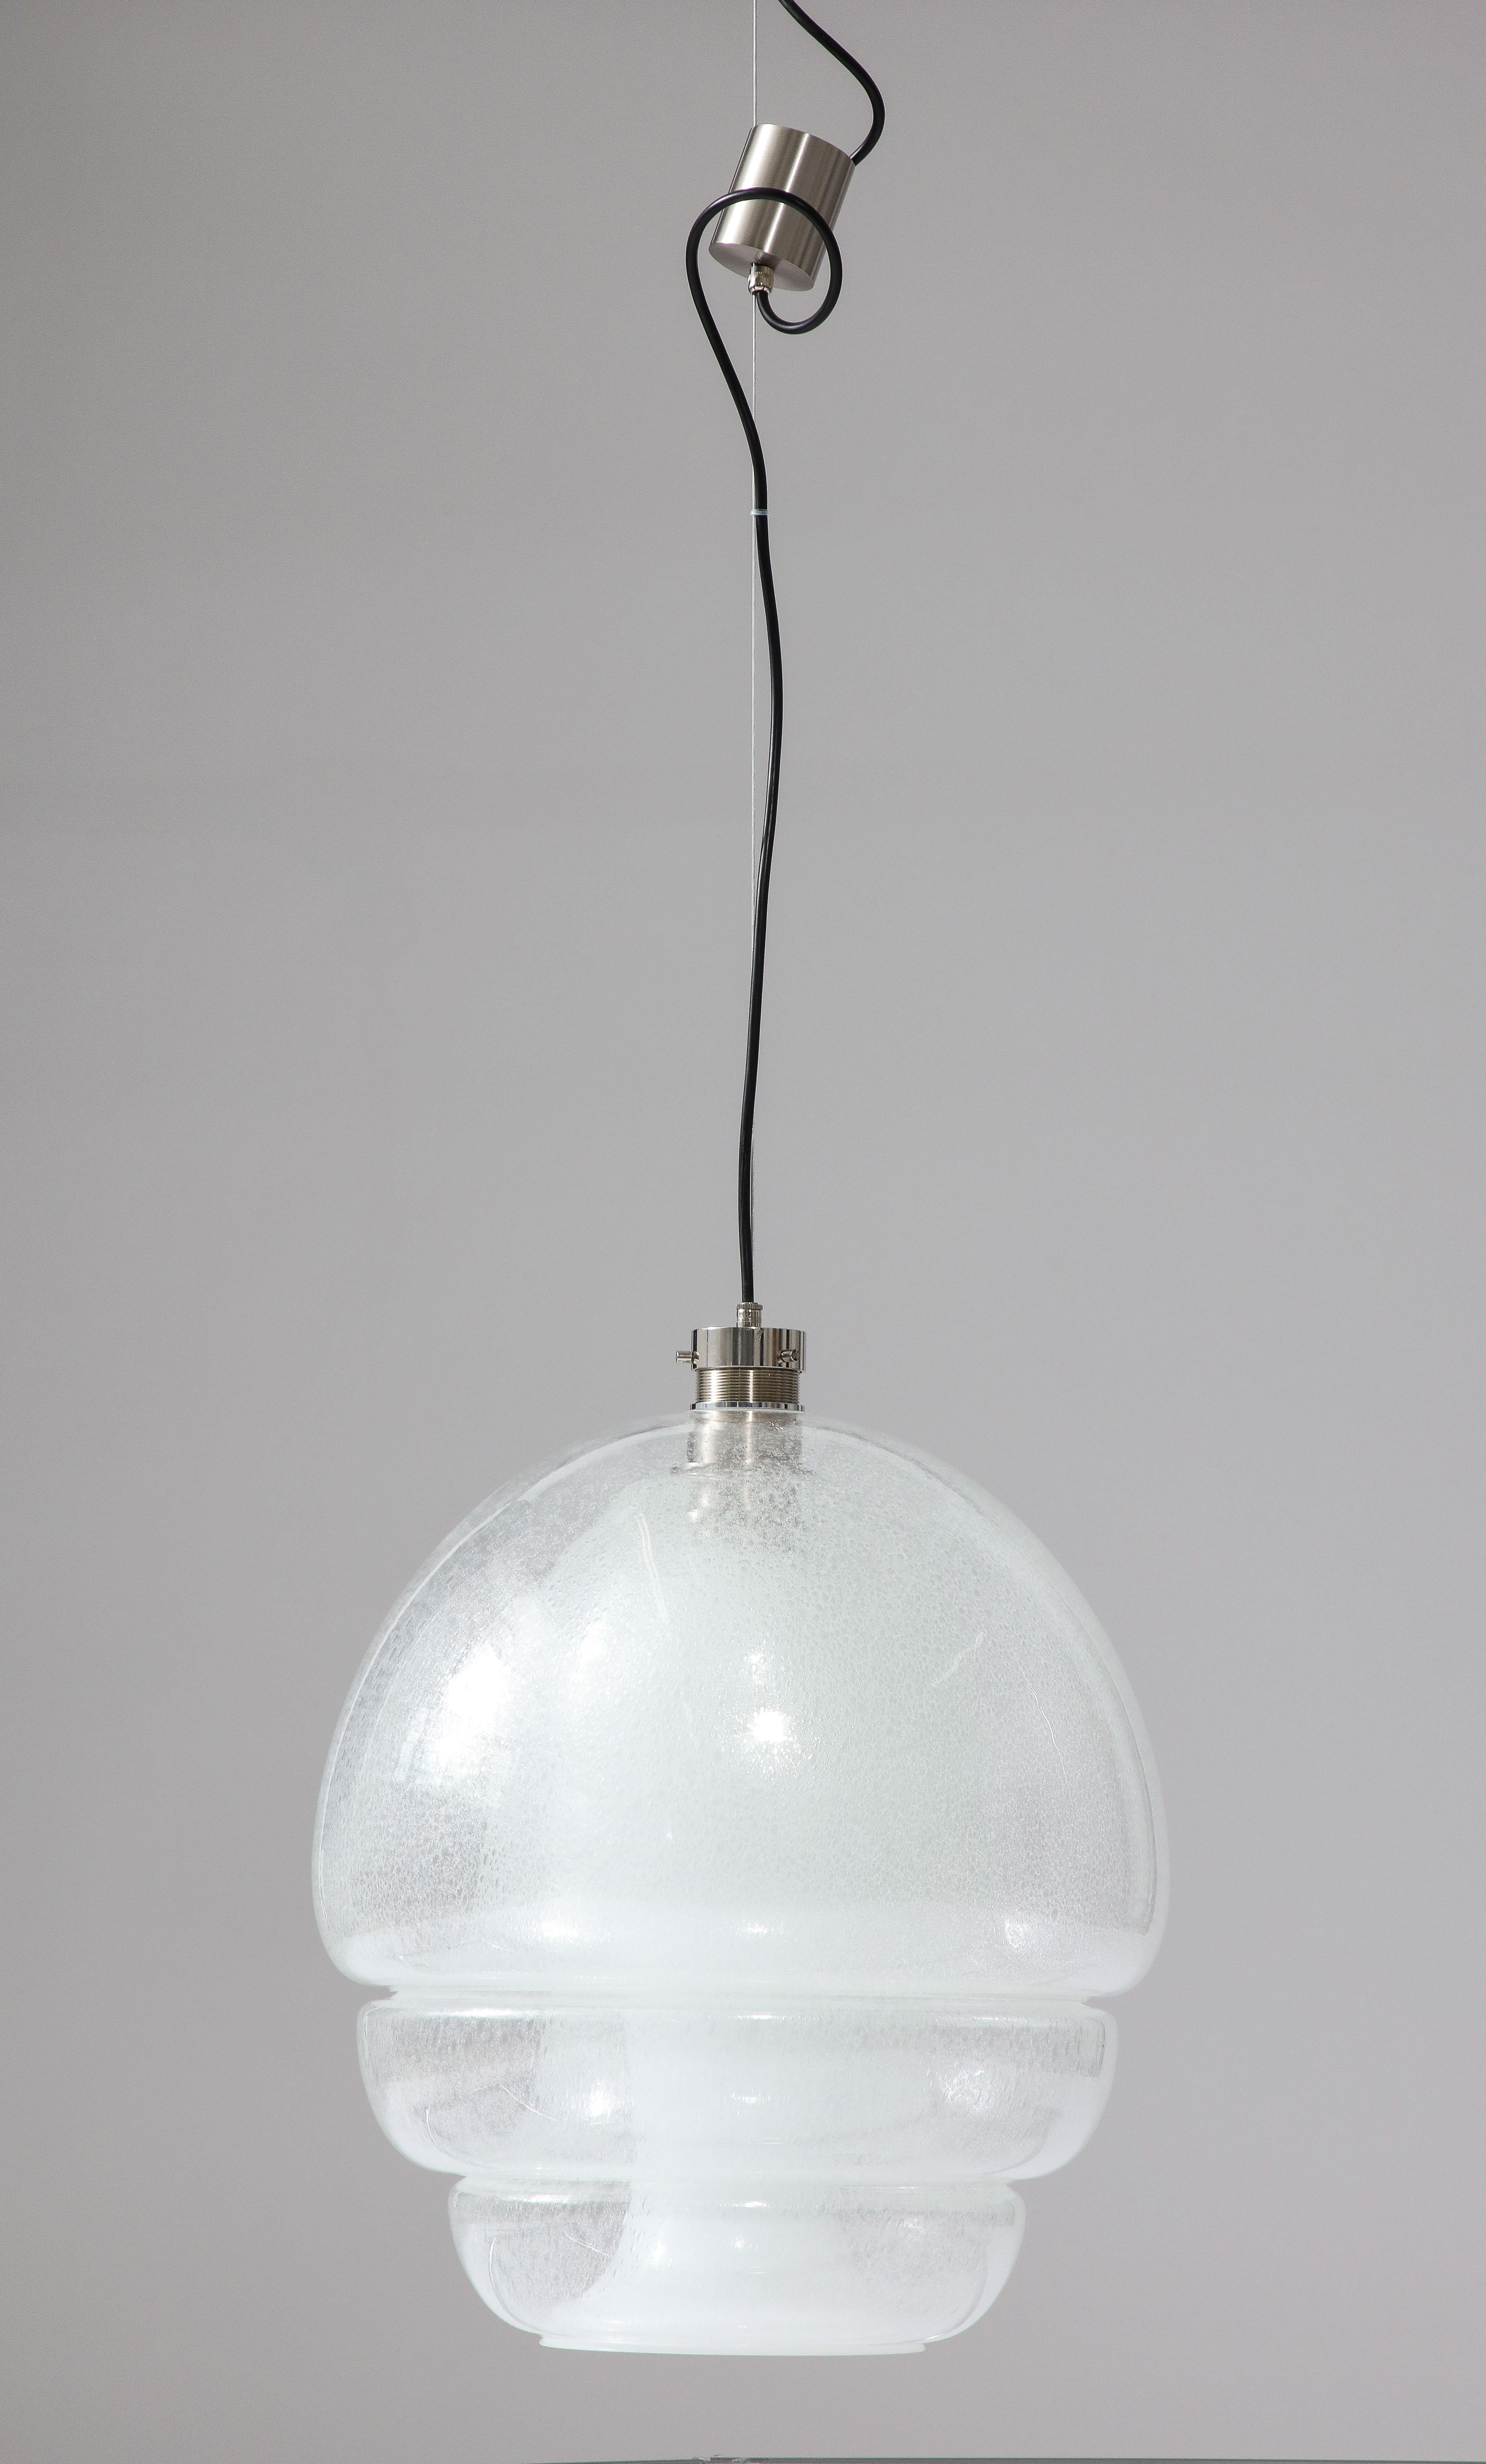 La suspension en verre LS 134 Medusa, créée par Carlo Nason pour la célèbre entreprise italienne Mazzega en 1969, témoigne de l'éclat d'un design intemporel. Avec sa forme à la fois élégante et saisissante, la création d'Eleg incarne l'essence de